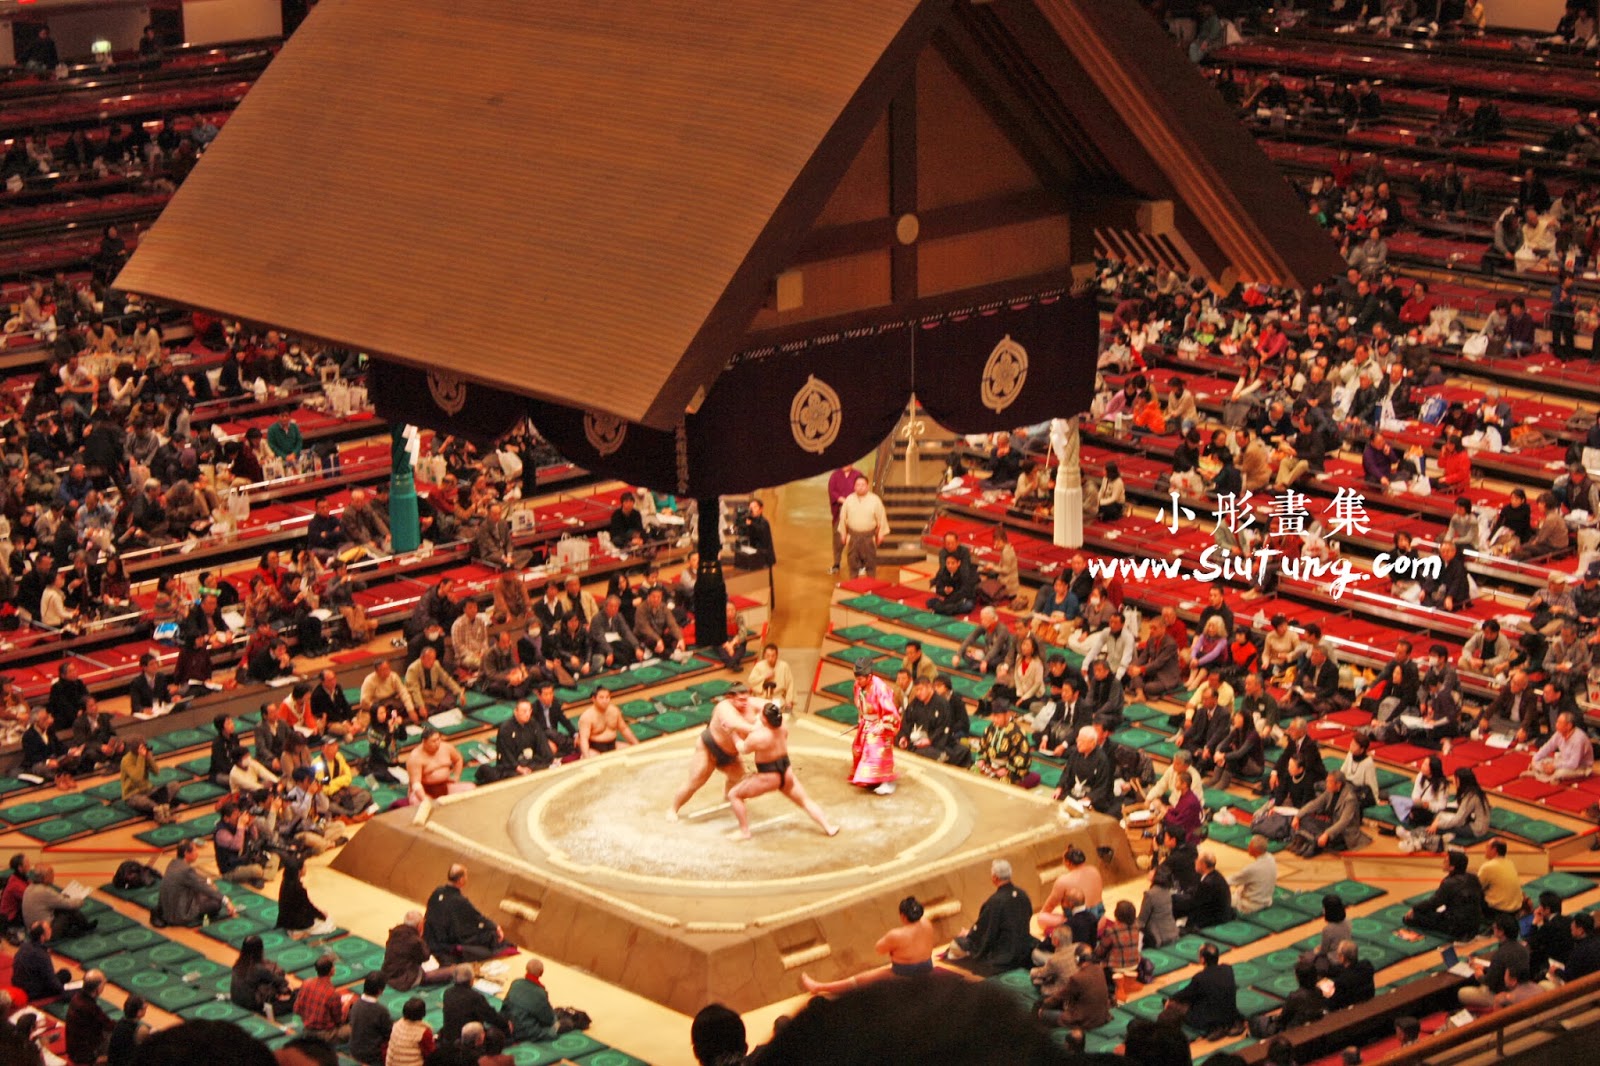 小彤畫集 兩國相撲國技館 東京style社區旅行團 下 親身看相撲賽